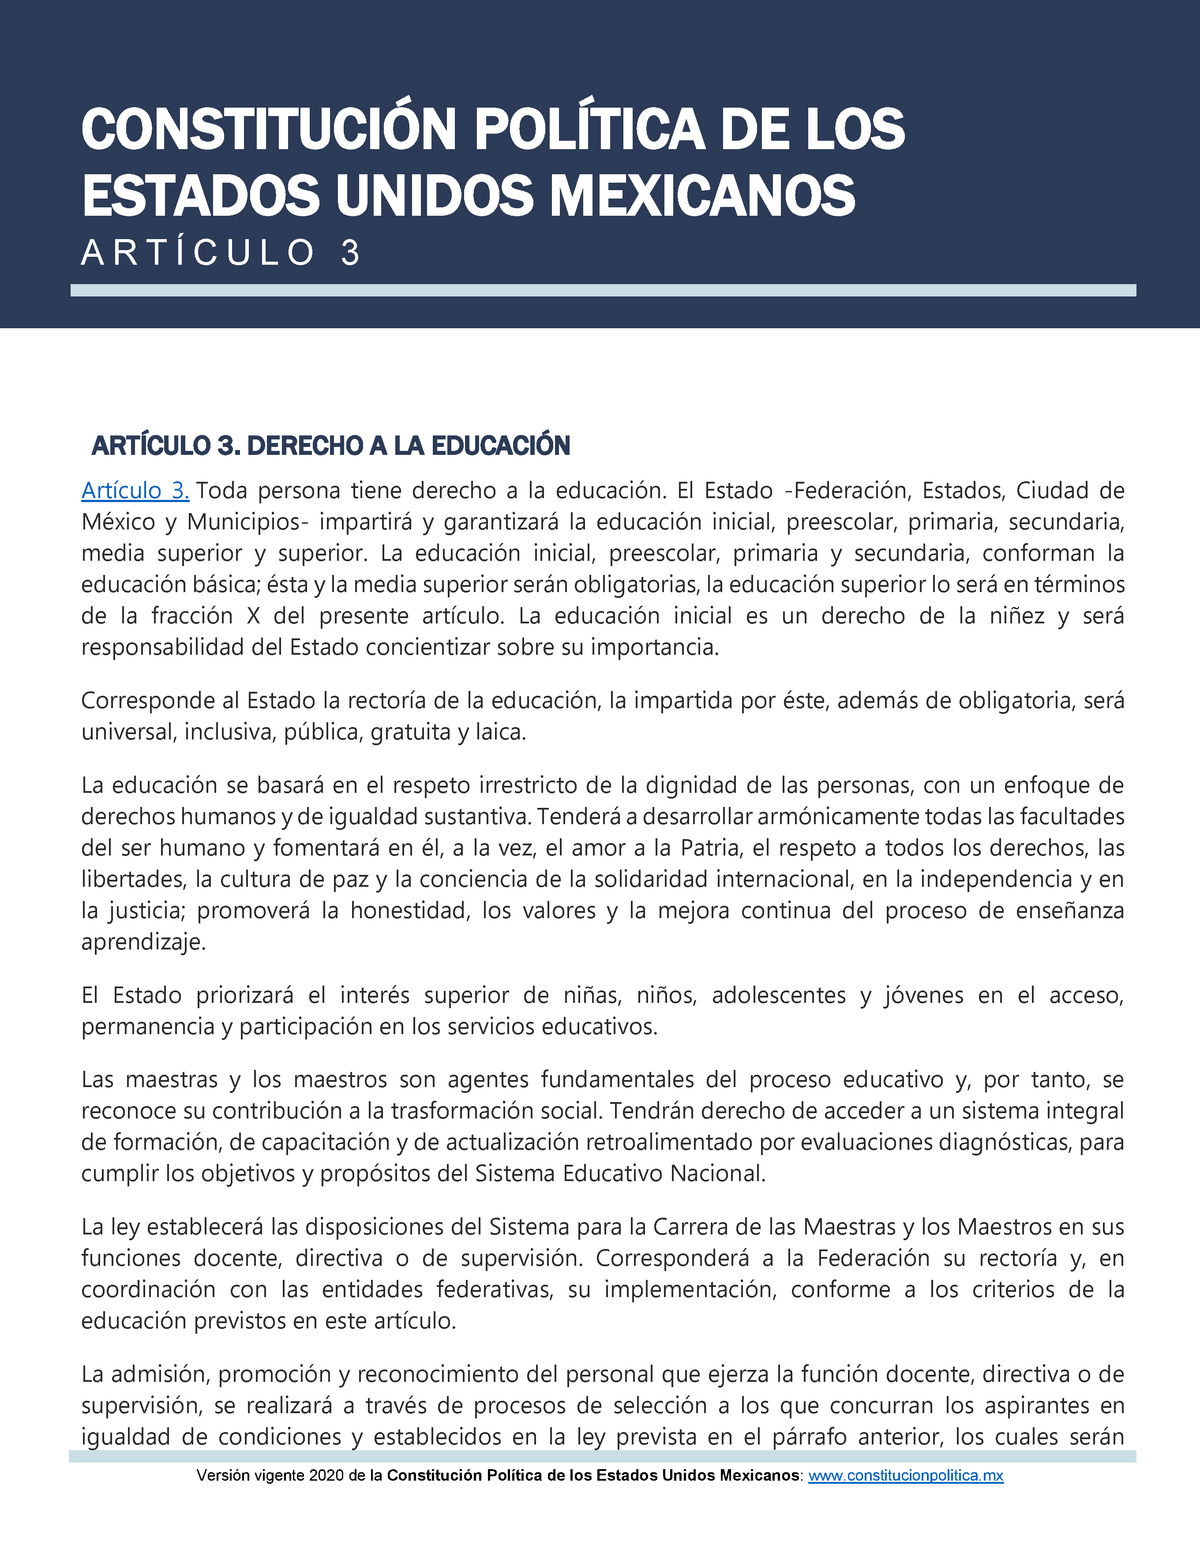 Artículo 3. Constitución Política de los Estados Unidos Mexicanos